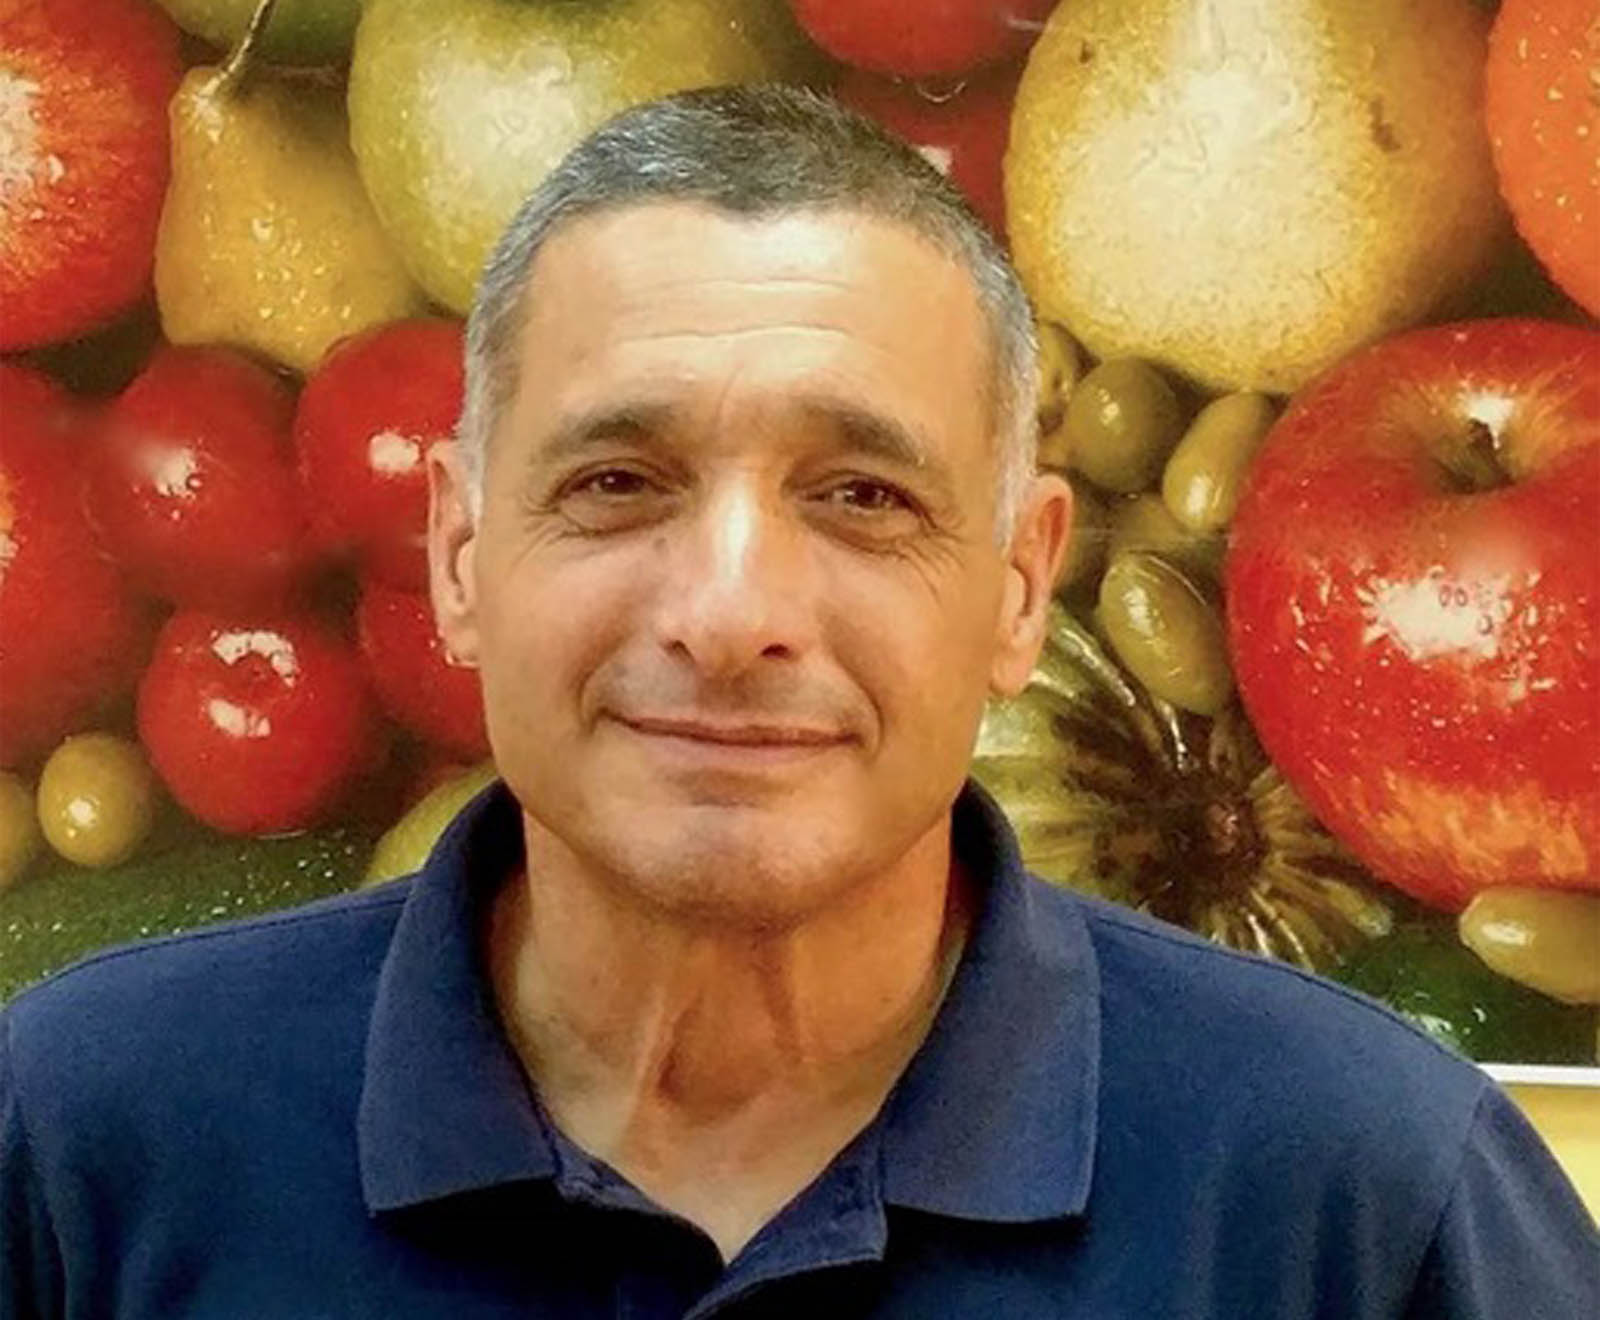 ירון בלחסן, מנכ"ל ארגון מגדלי הפירות בישראל: "לא ברור אם תהיה כדאיות כלכלית לחקלאים לייצא רימונים" (צילום: ארגון מגדלי הפירות)